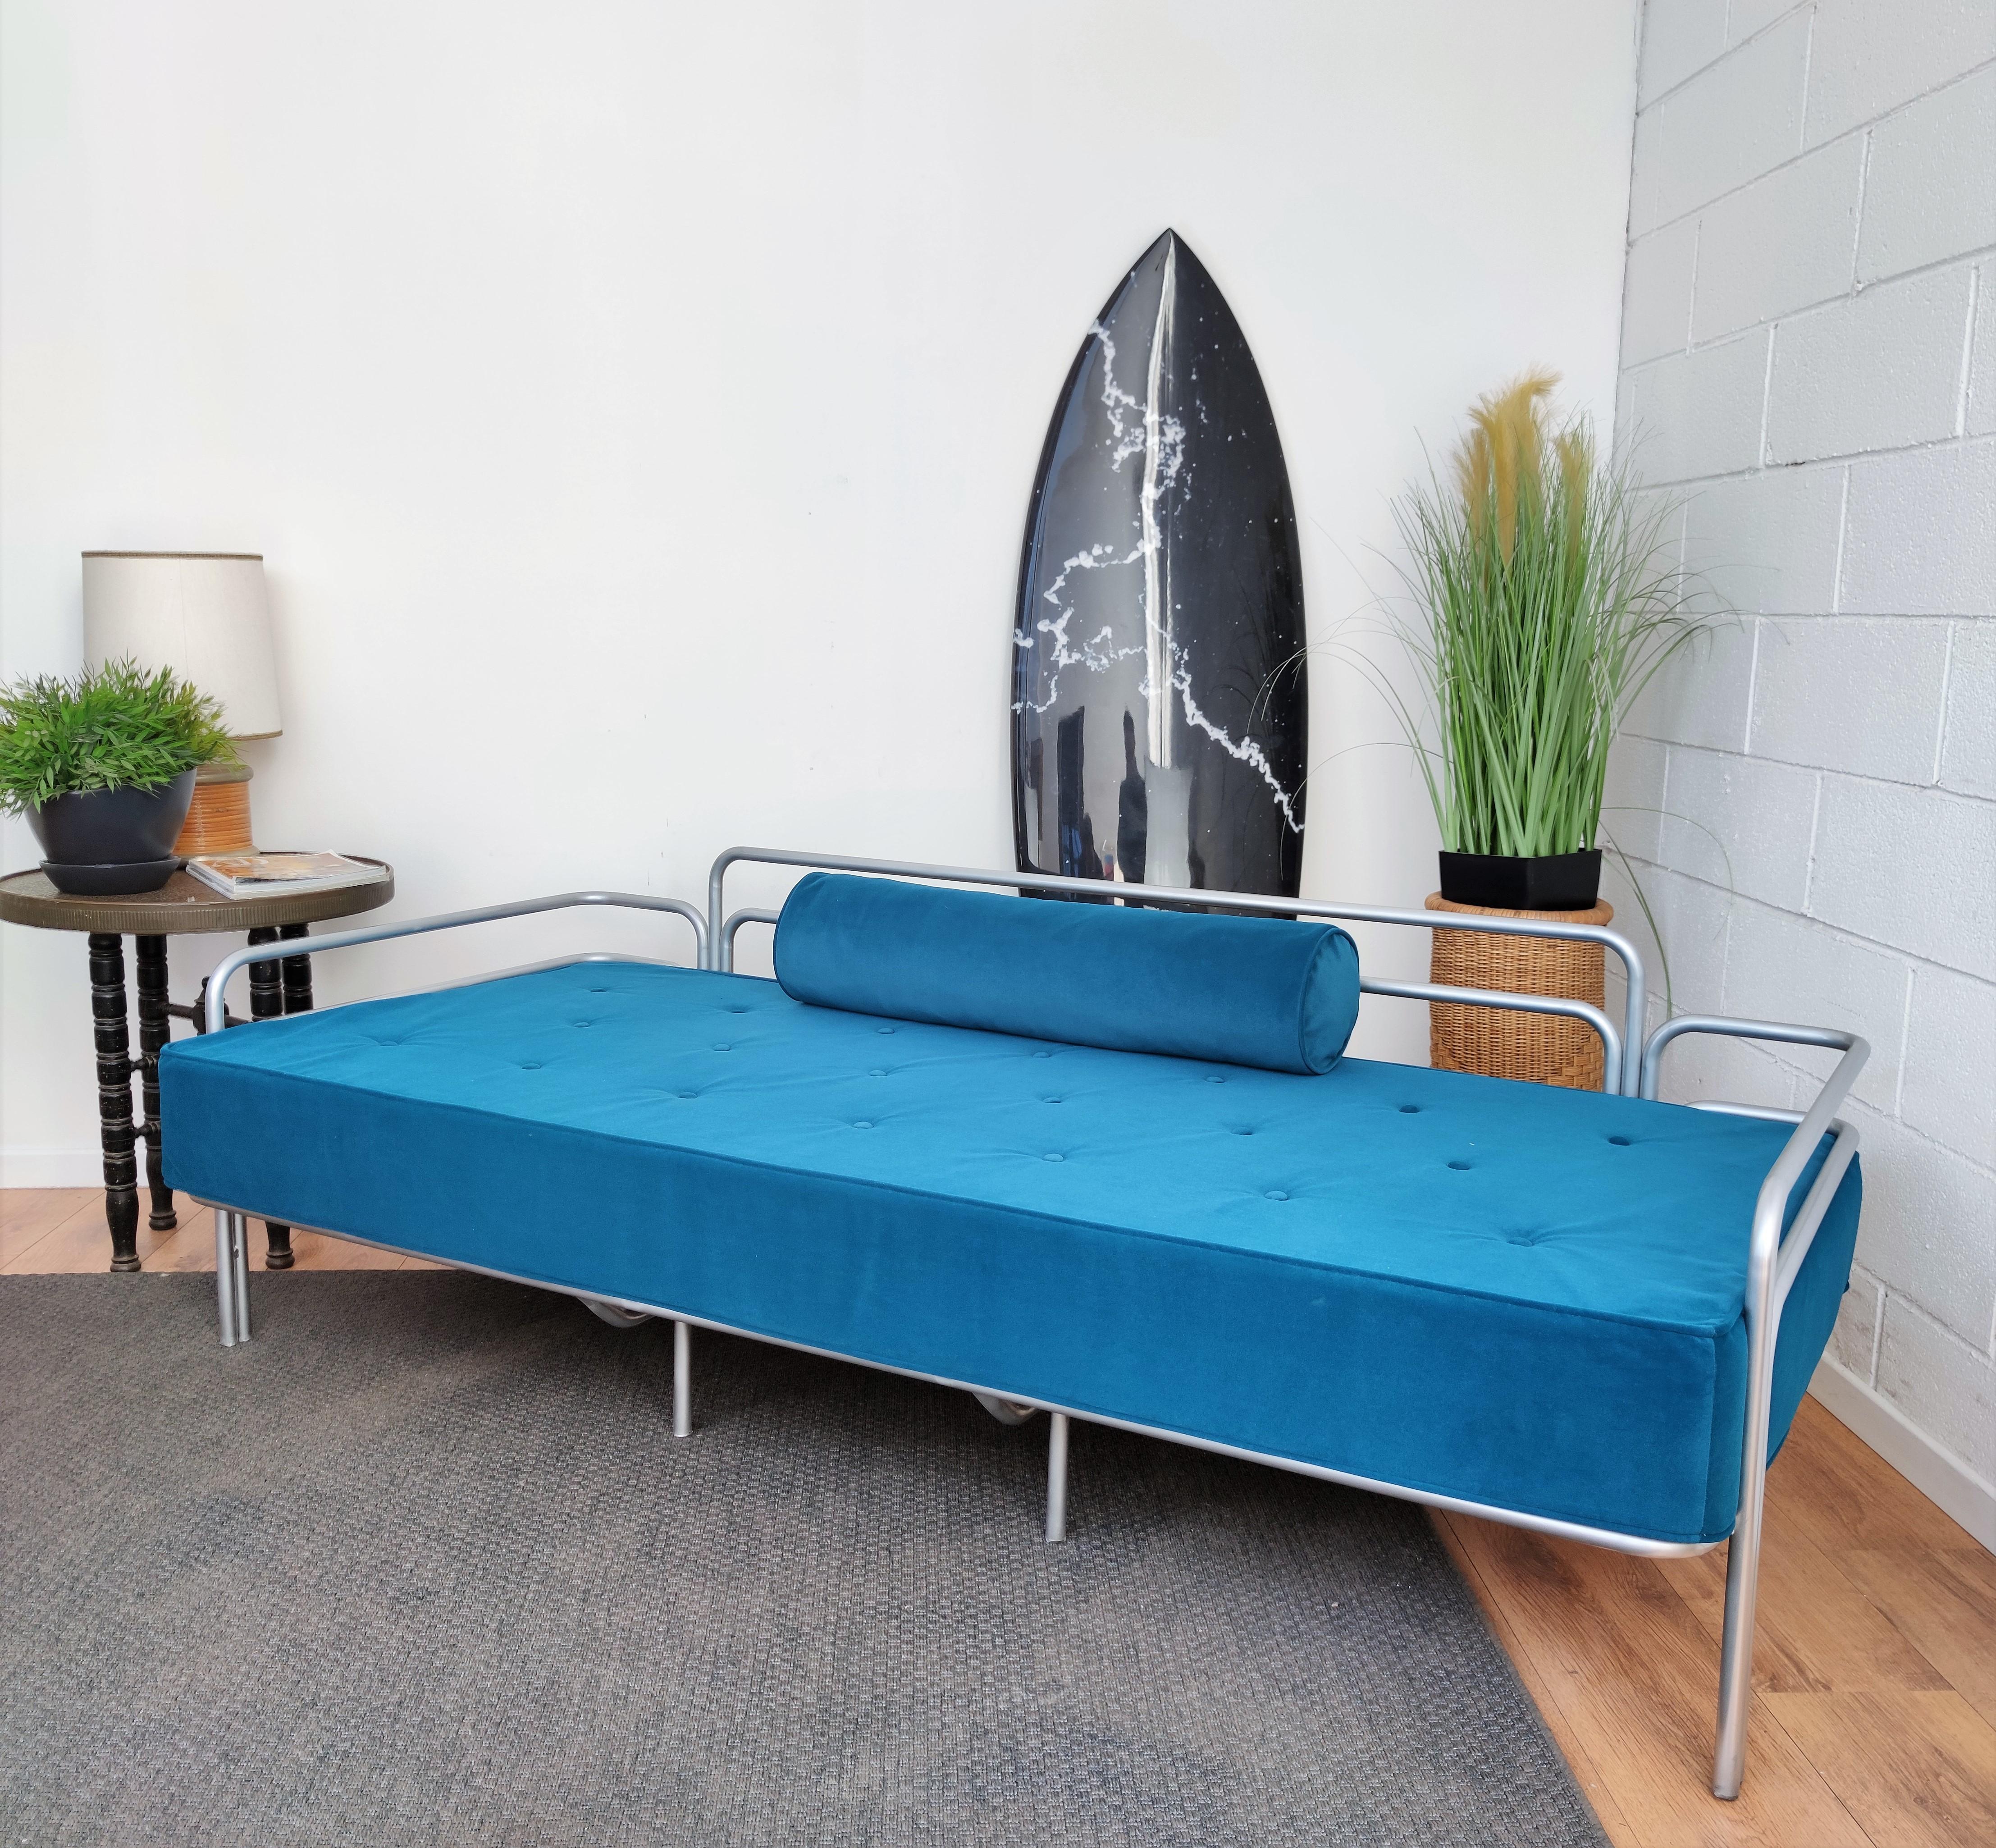 Magnifique canapé ou lit de jour en acier métallique italien des années 1960 produit par Busnelli, une entreprise de design emblématique située au cœur du quartier des meubles du nord de l'Italie. Cette pièce, tant dans la conception que dans les